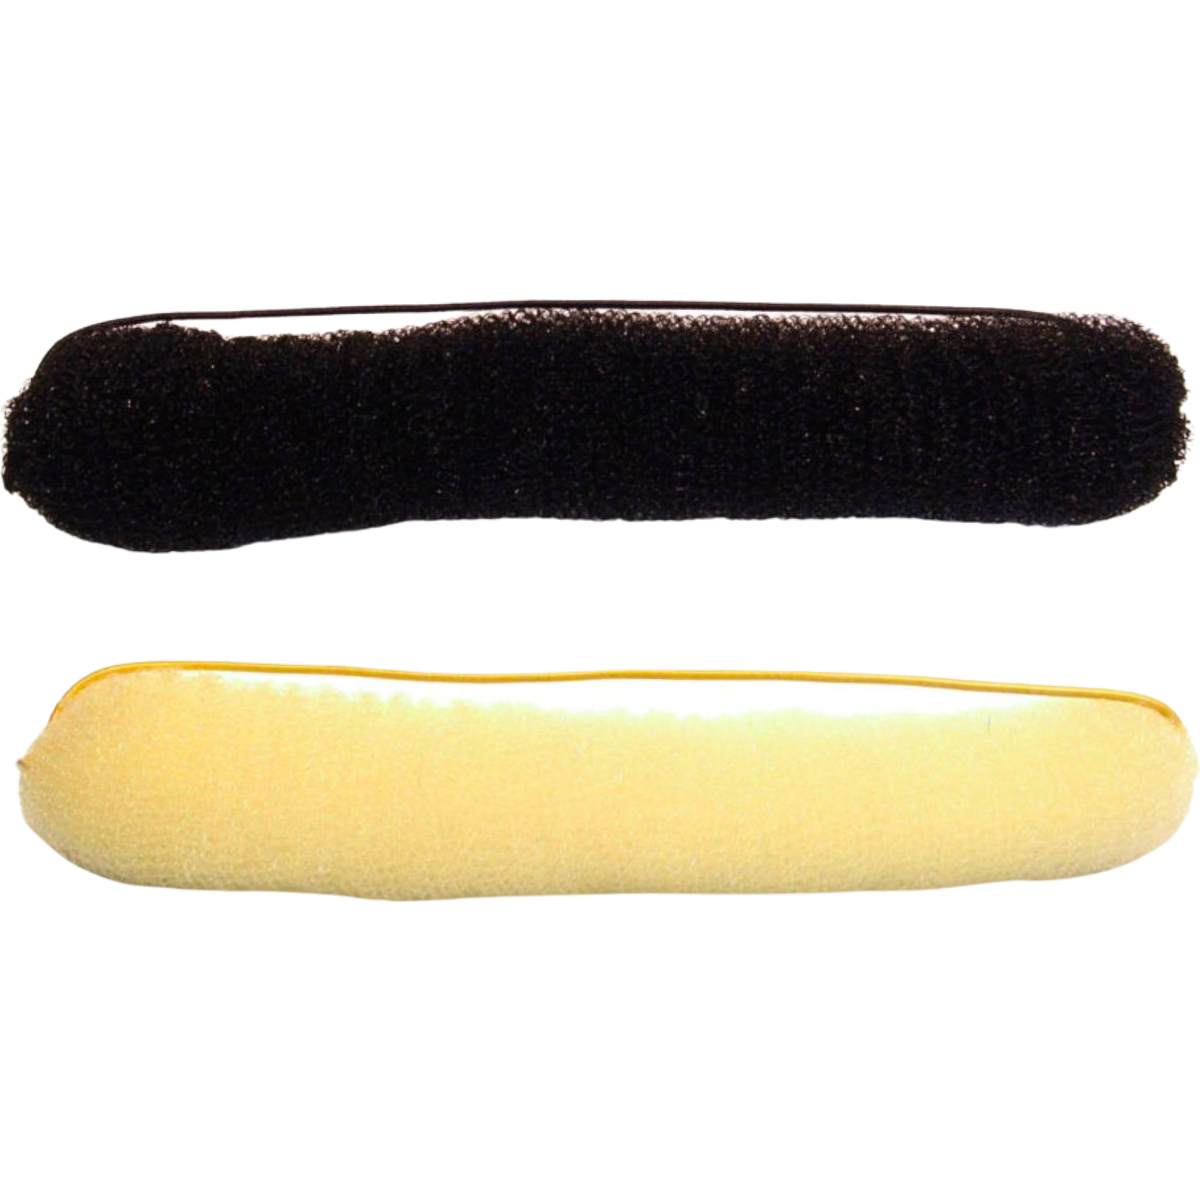 ספוג מאורך עם גומי בלונד או שחור